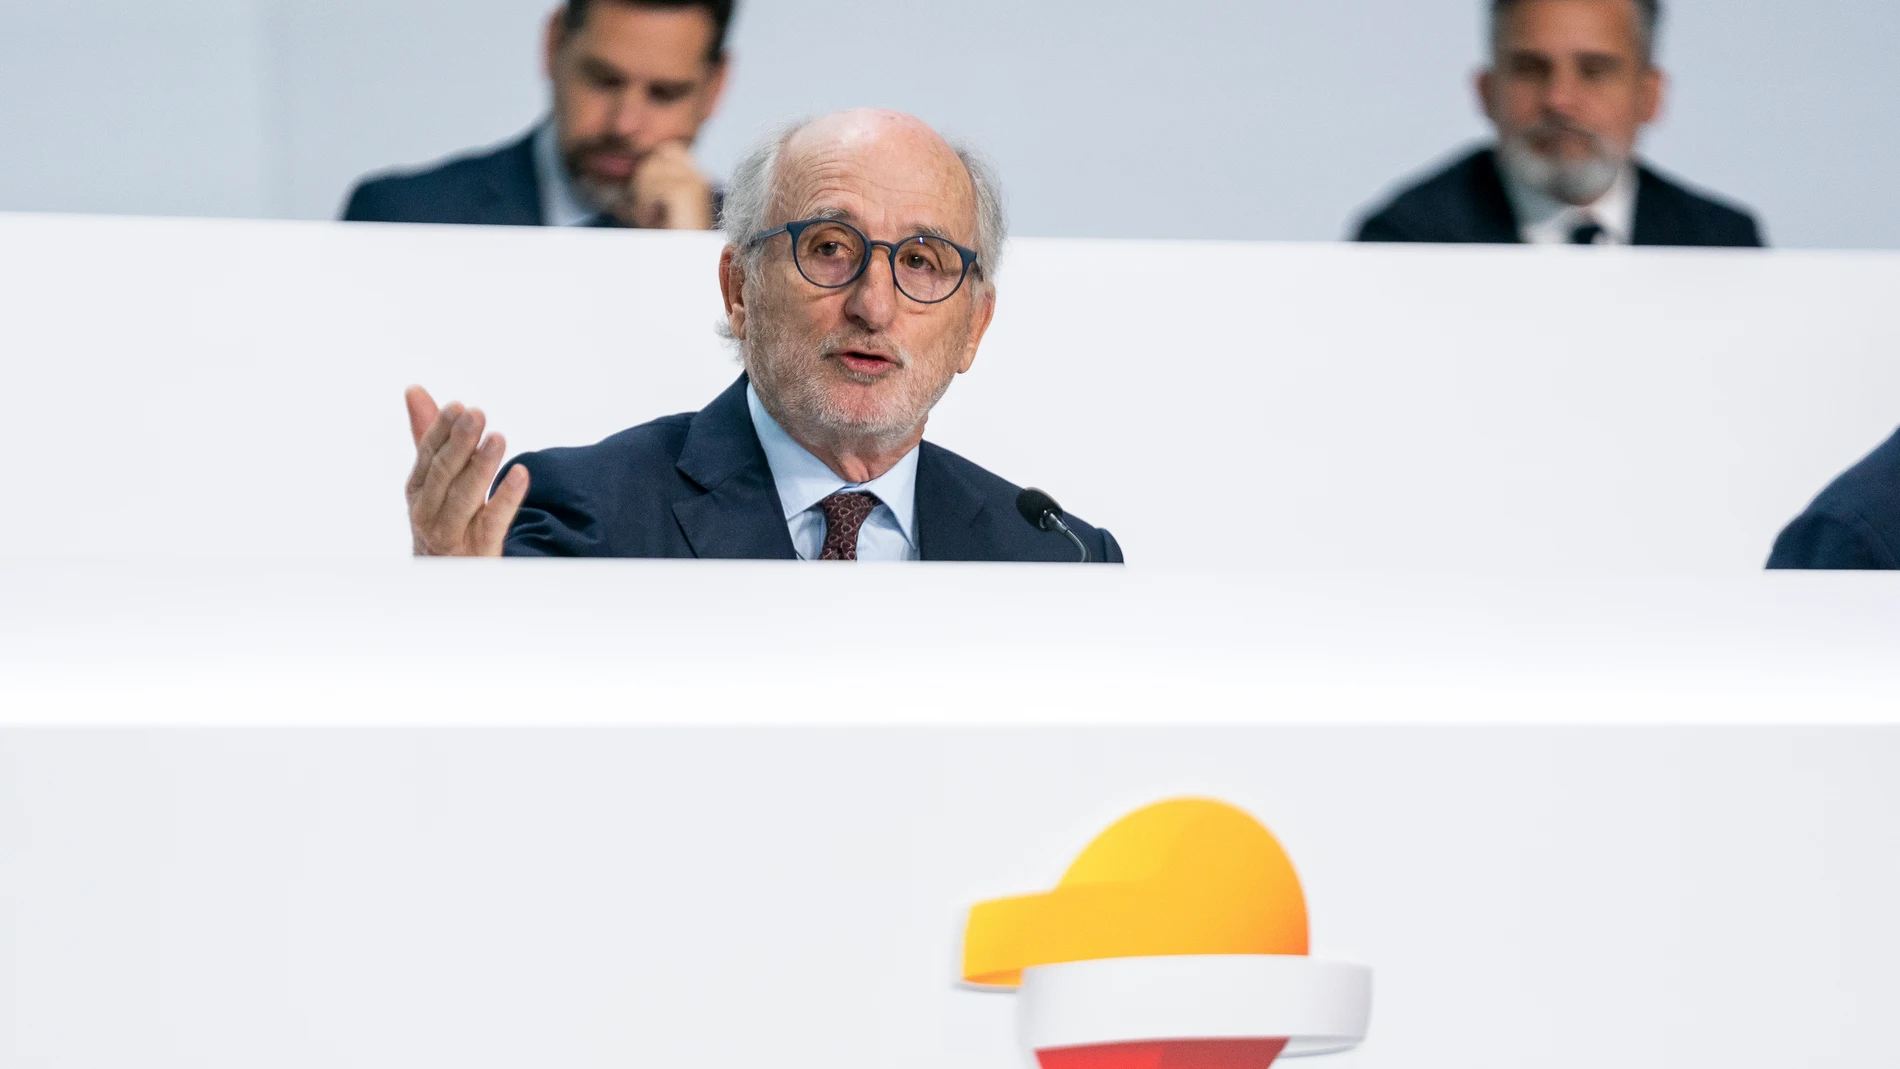 El presidente de Repsol, Antonio Brufau, interviene durante la Junta General de Accionistas de Repsol